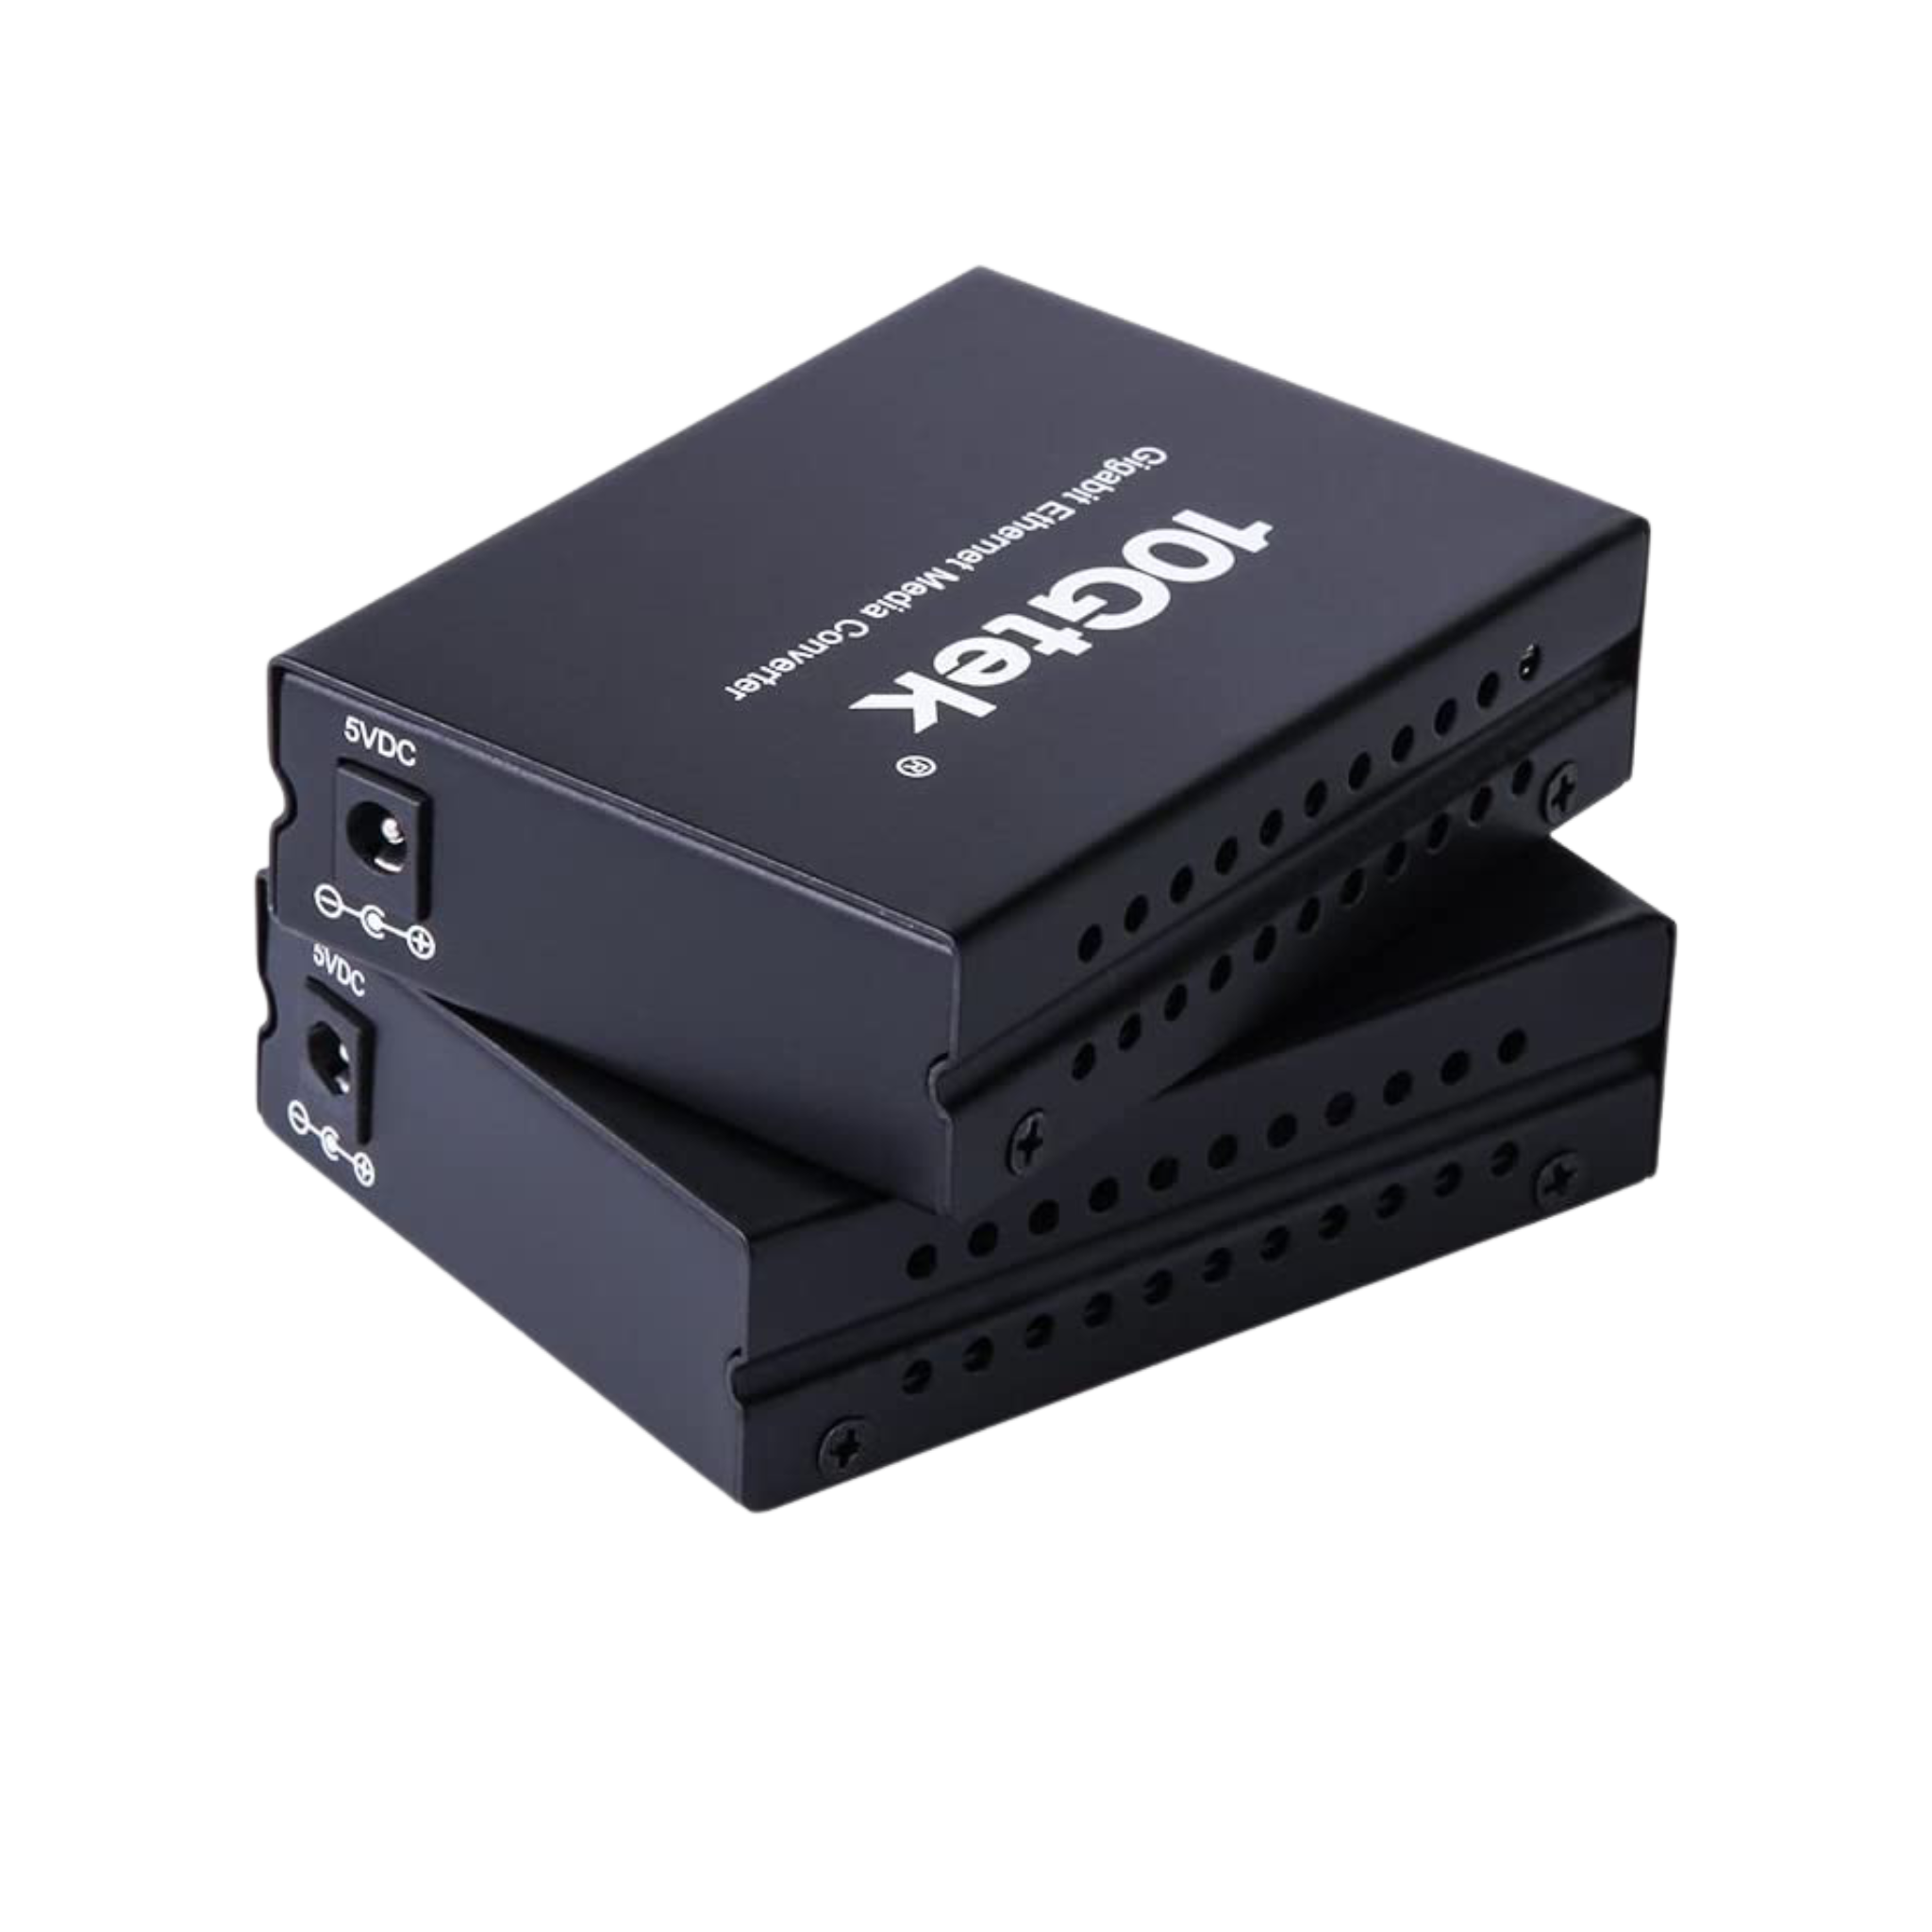 Gigabit Ethernet Fiber Media Converter Open SFP Slot (2 pack)